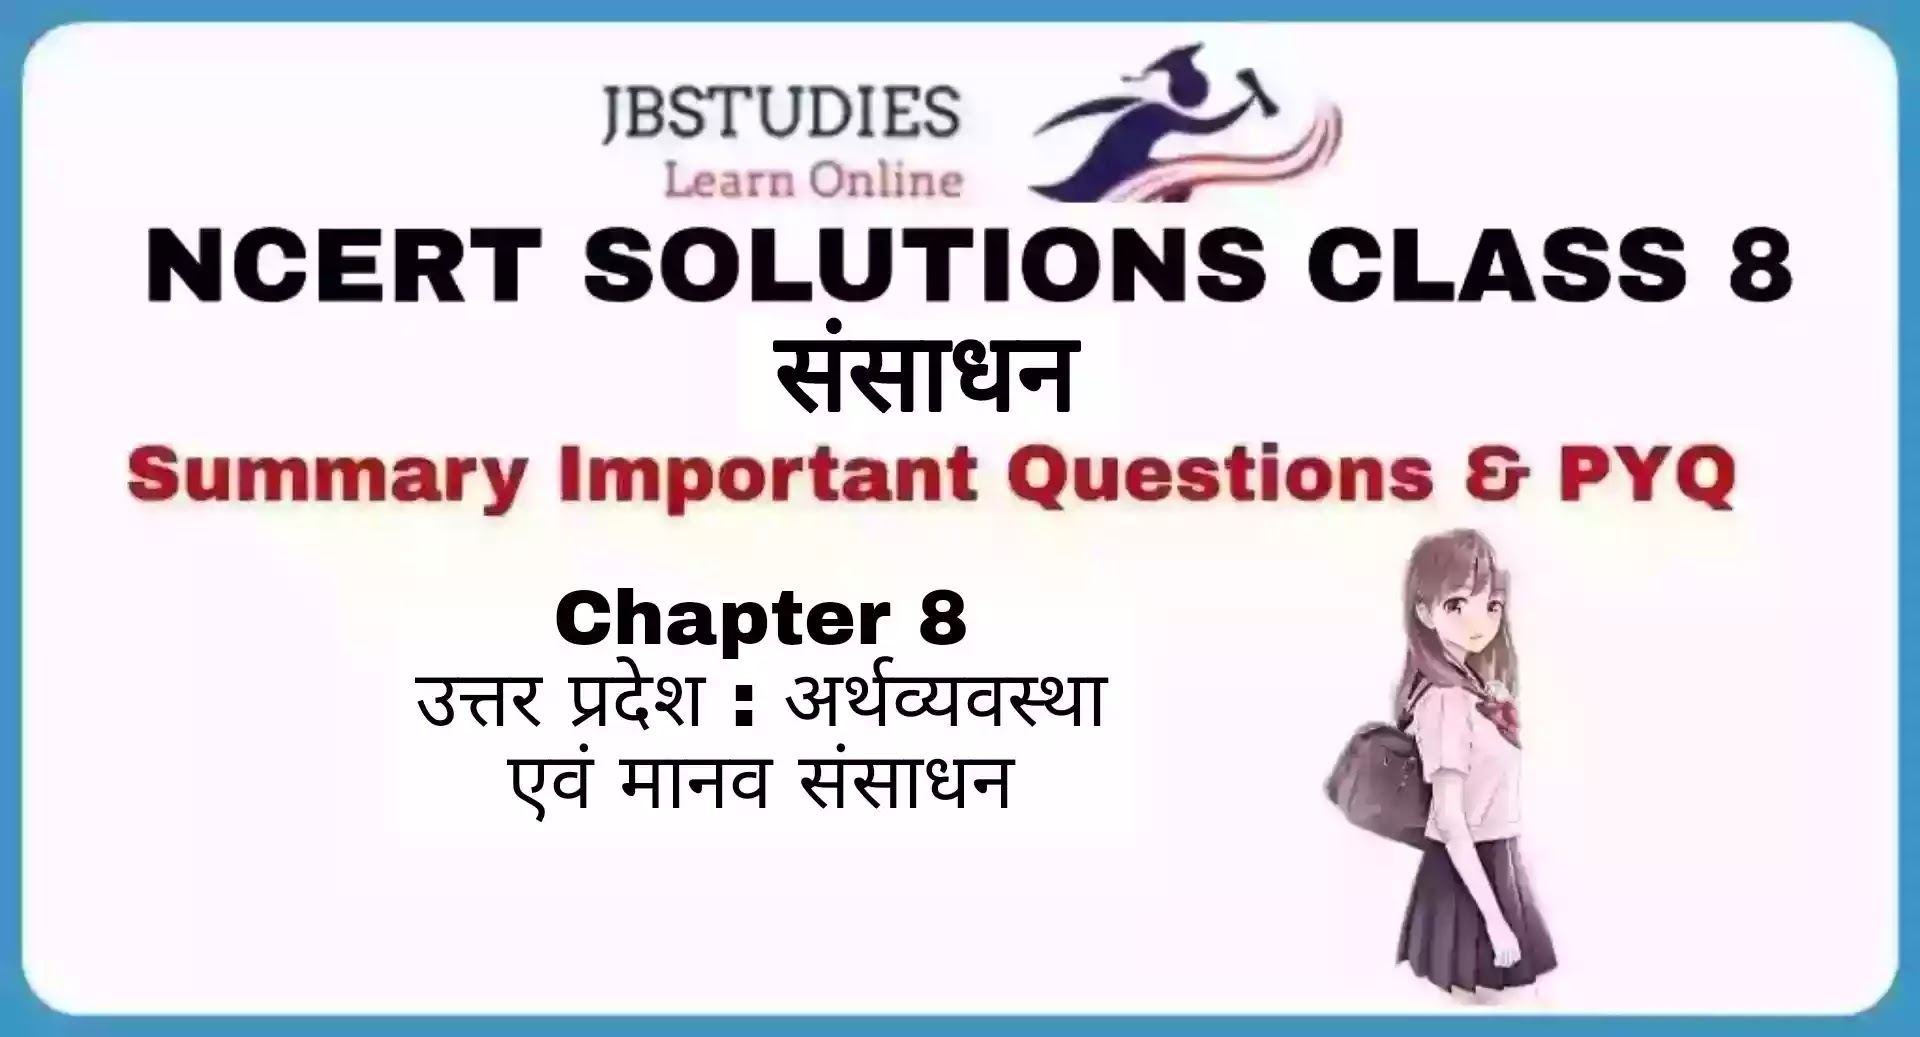 Solutions Class 8 संसाधन एवं विकाश Chapter- 8 (अर्थव्यवस्था एवं मानव संसाधन)